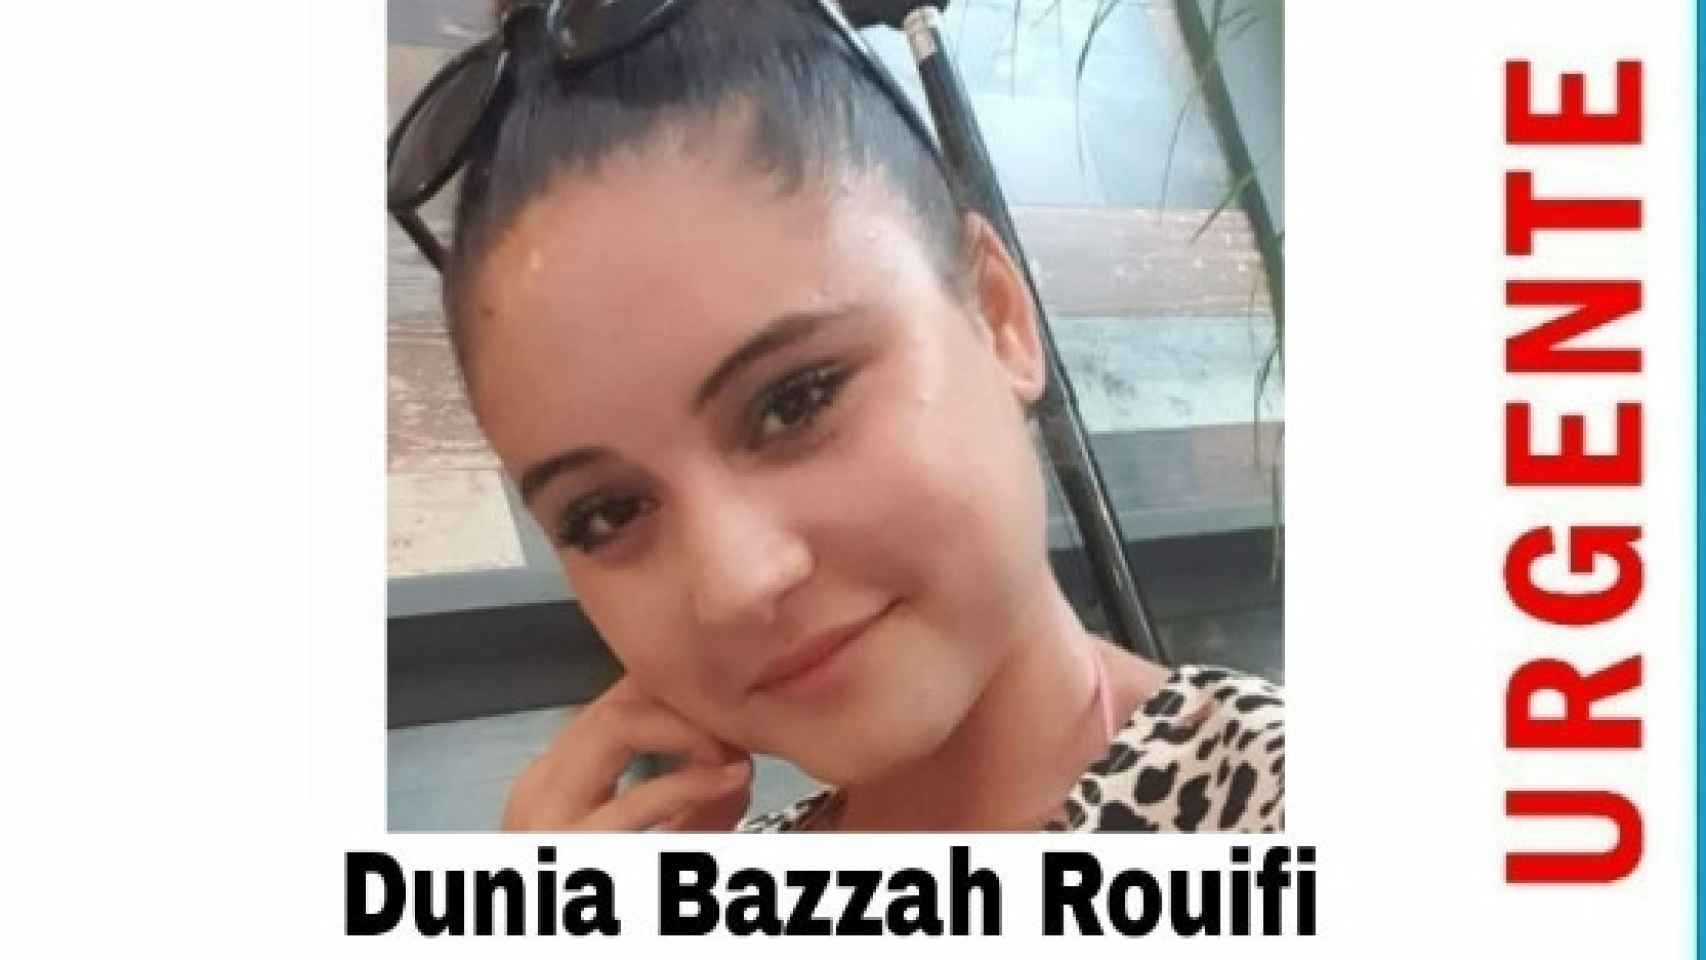 Buscan a Dunia, una joven de 25 años desaparecida en Marbella desde el martes.